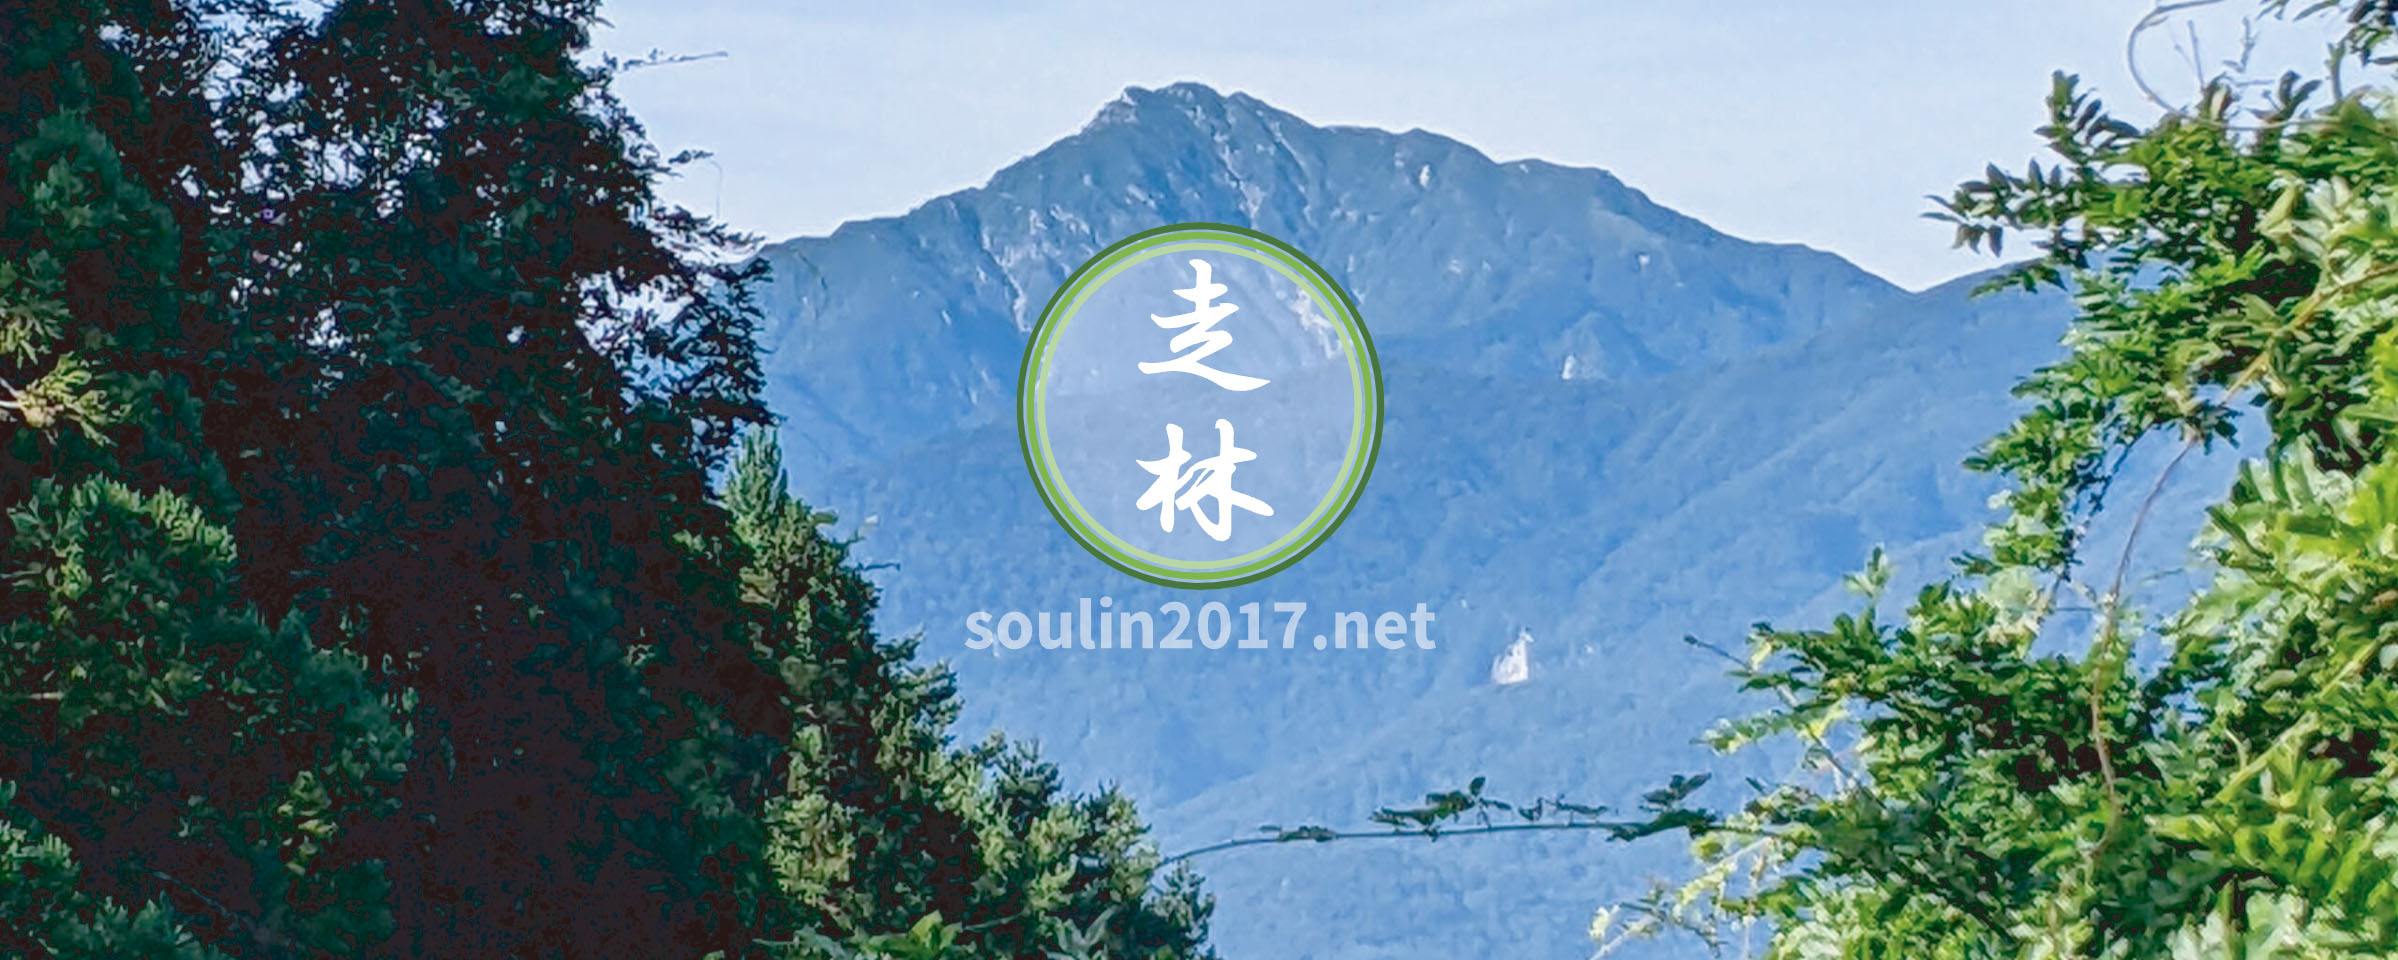 走林社中 soulin2017.net